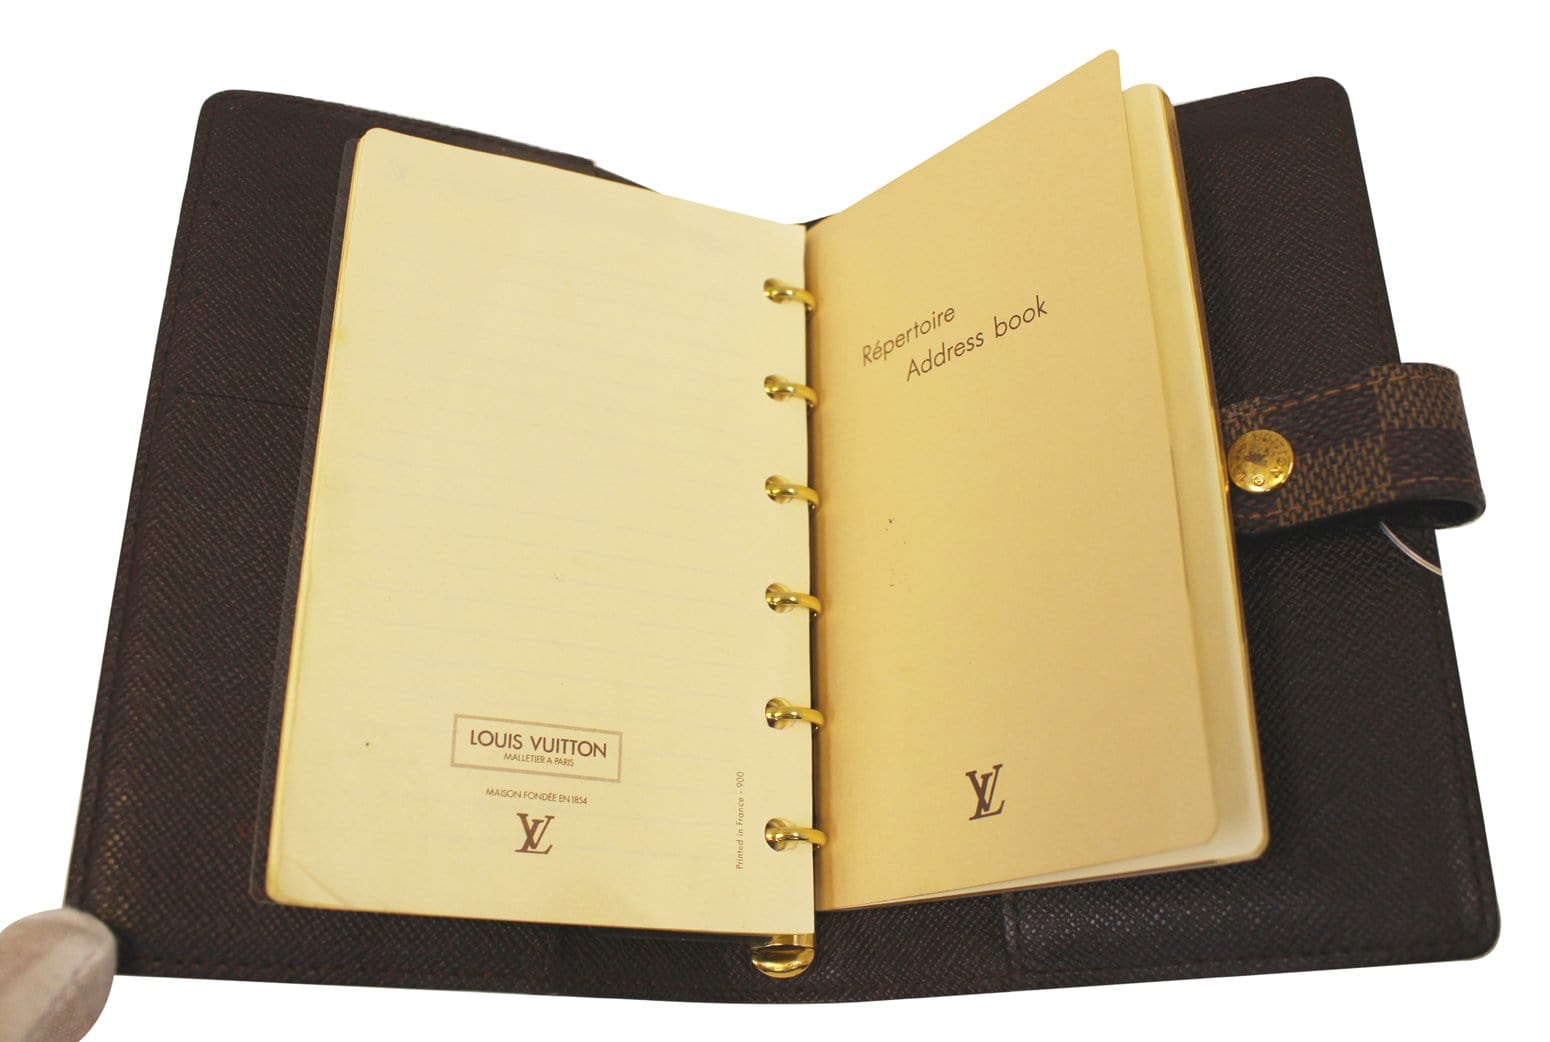 Louis Vuitton Calendar Book  Natural Resource Department